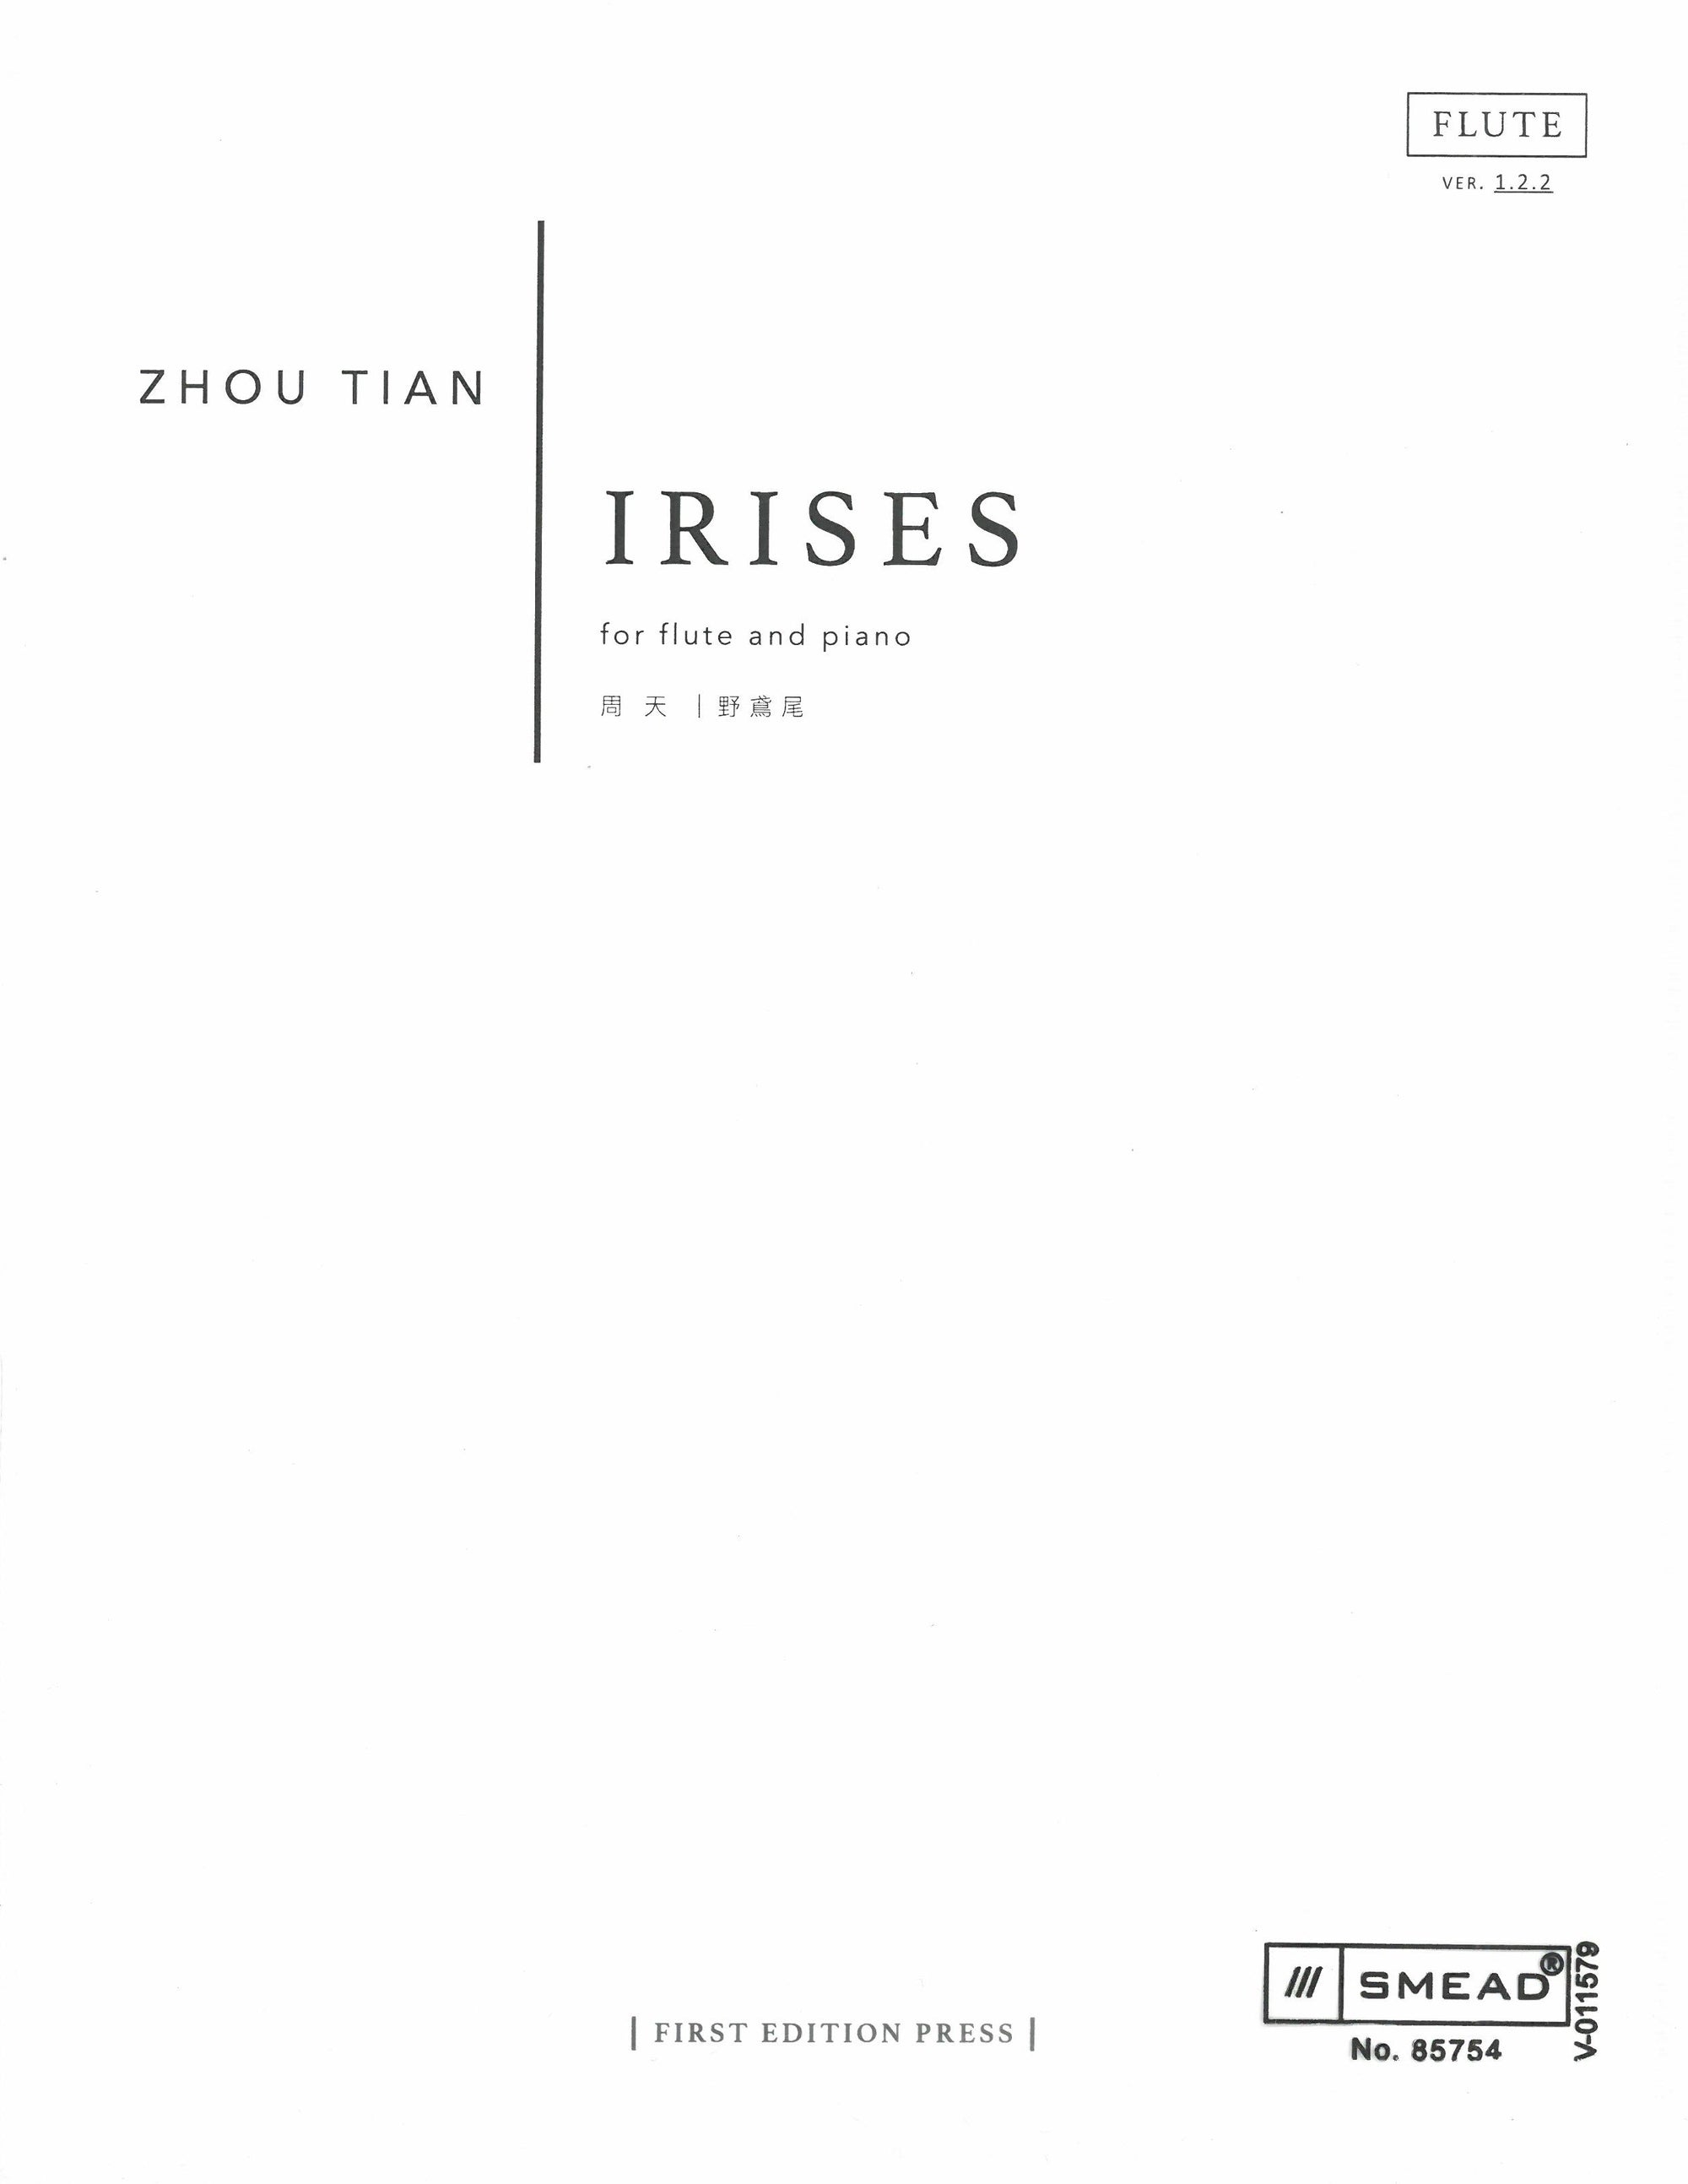 Zhou: Irises